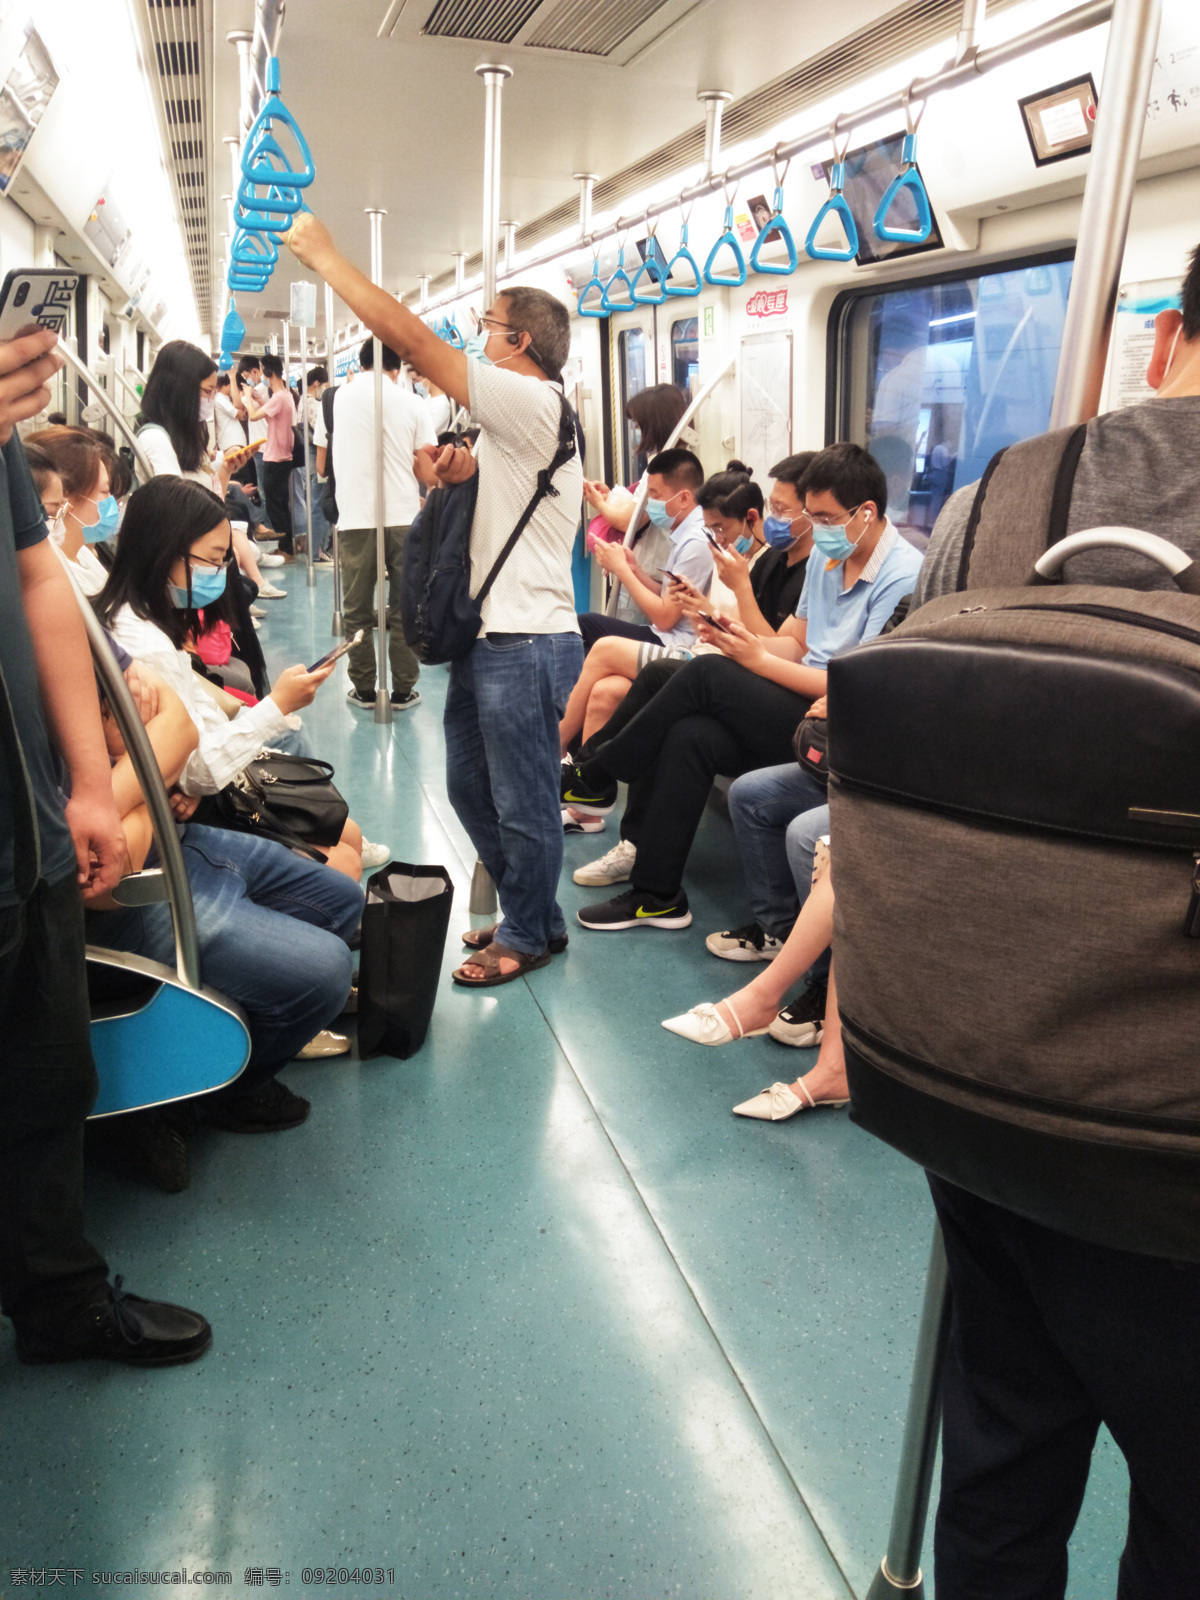 上班地铁 上班族 交通工具 地铁 地铁车厢 人群 高清 旅游摄影 国内旅游